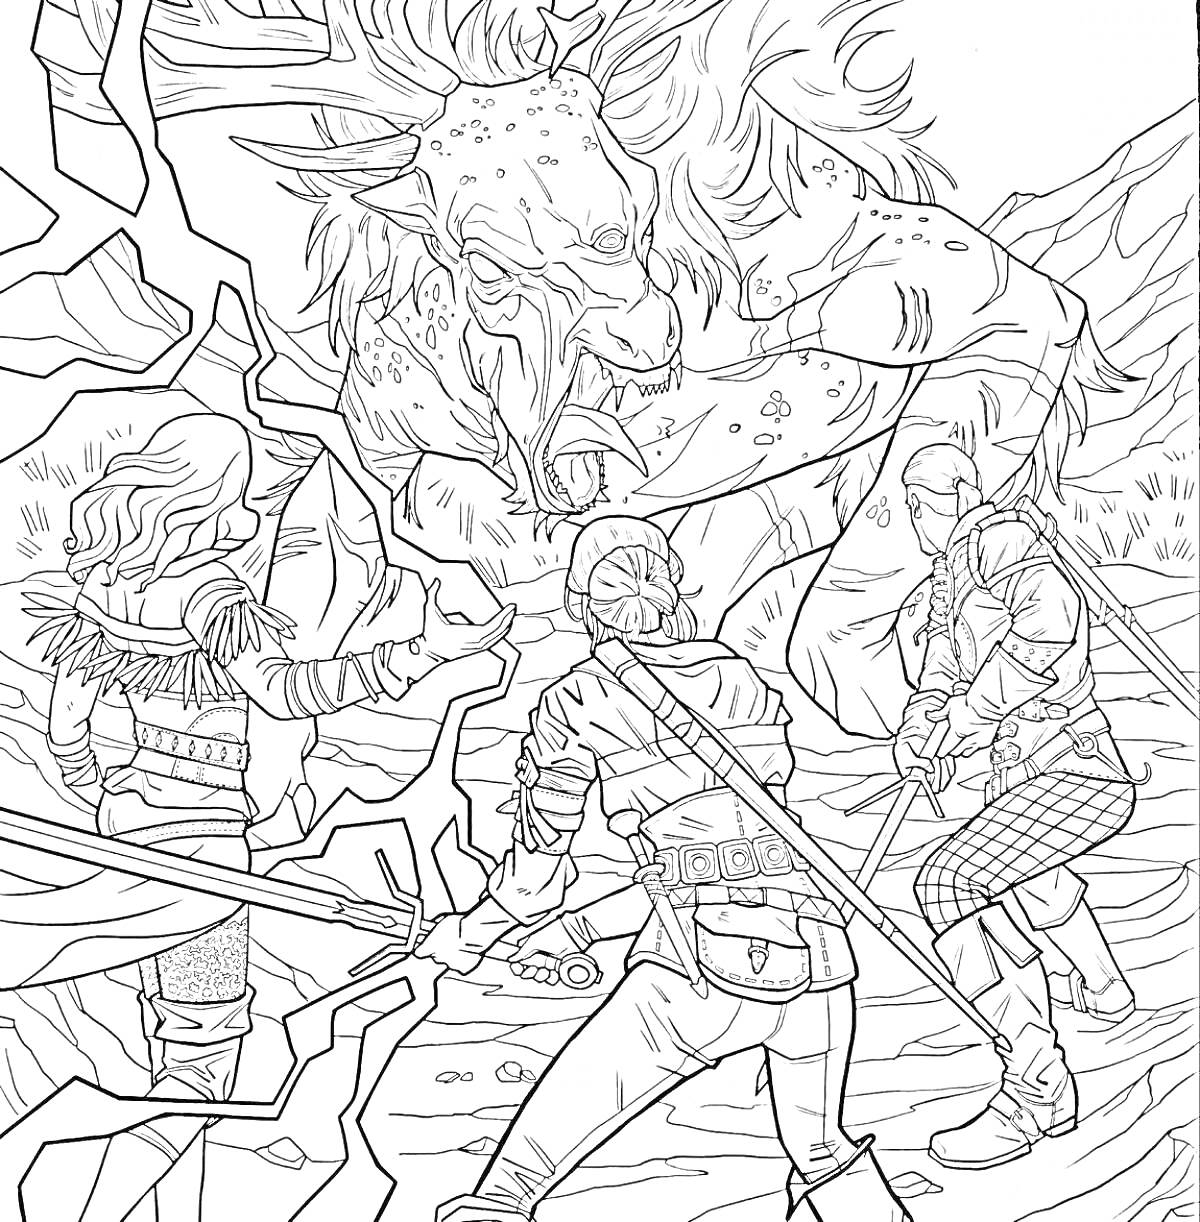 Раскраска Сражение ведьмаков с чудовищем на скалистой равнине; трое ведьмаков с мечами против чудовища с рогами и длинным языком, молнии и скалы вокруг.